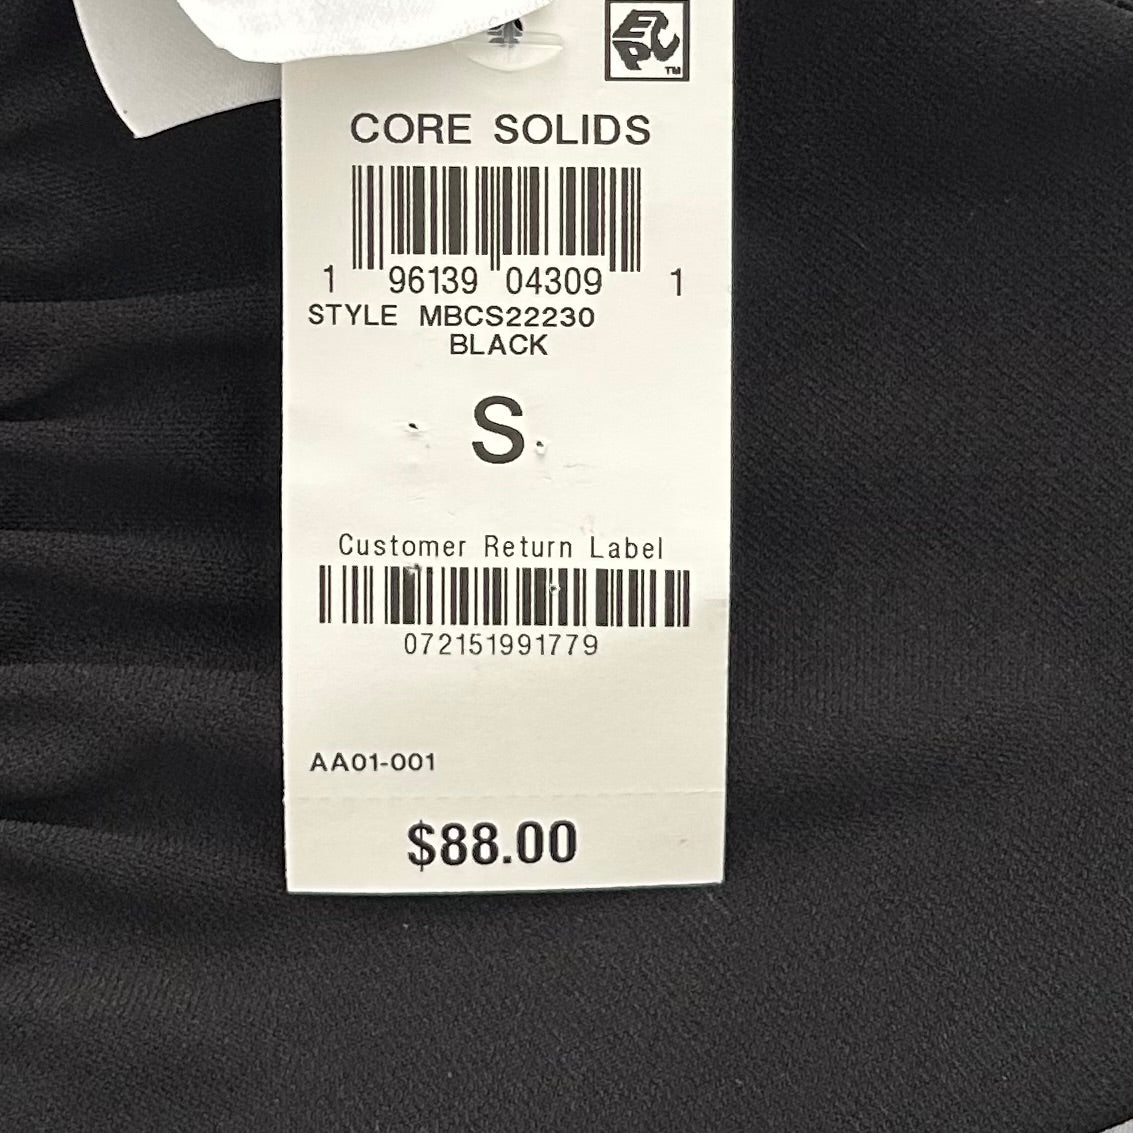 Core Solids Black Cowl Neck One-Piece Swimsuit Size S Women's Swimwear